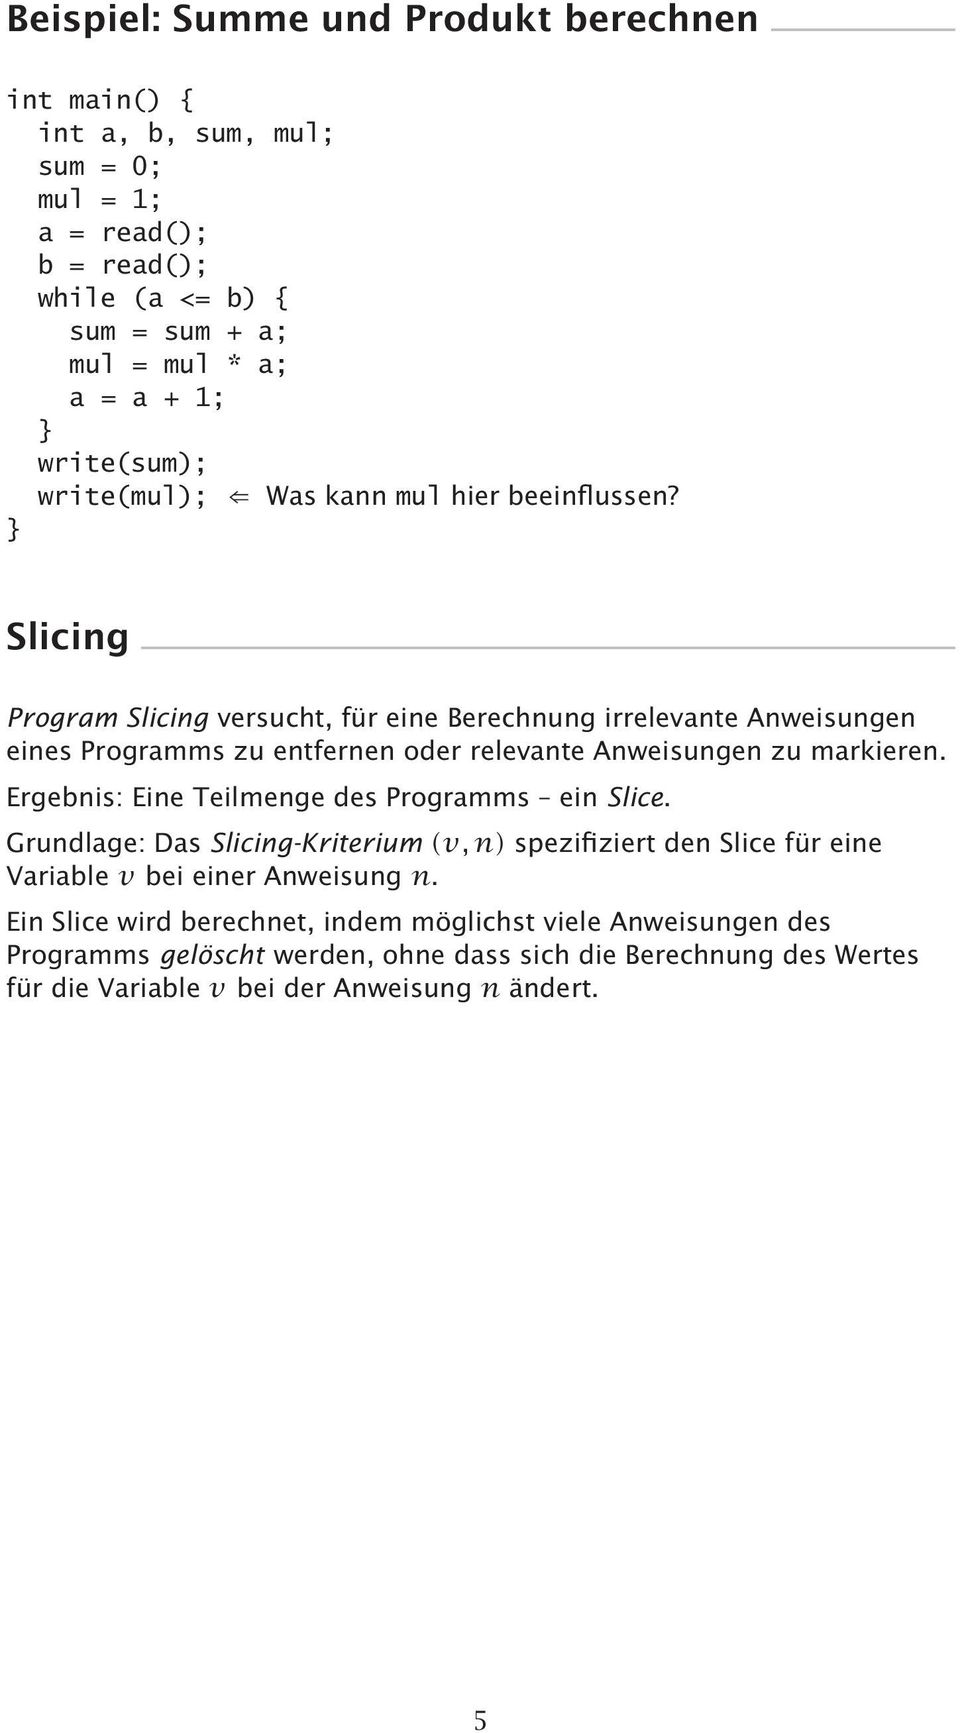 Slicing Program Slicing versucht, für eine Berechnung irrelevante Anweisungen eines Programms zu entfernen oder relevante Anweisungen zu markieren.